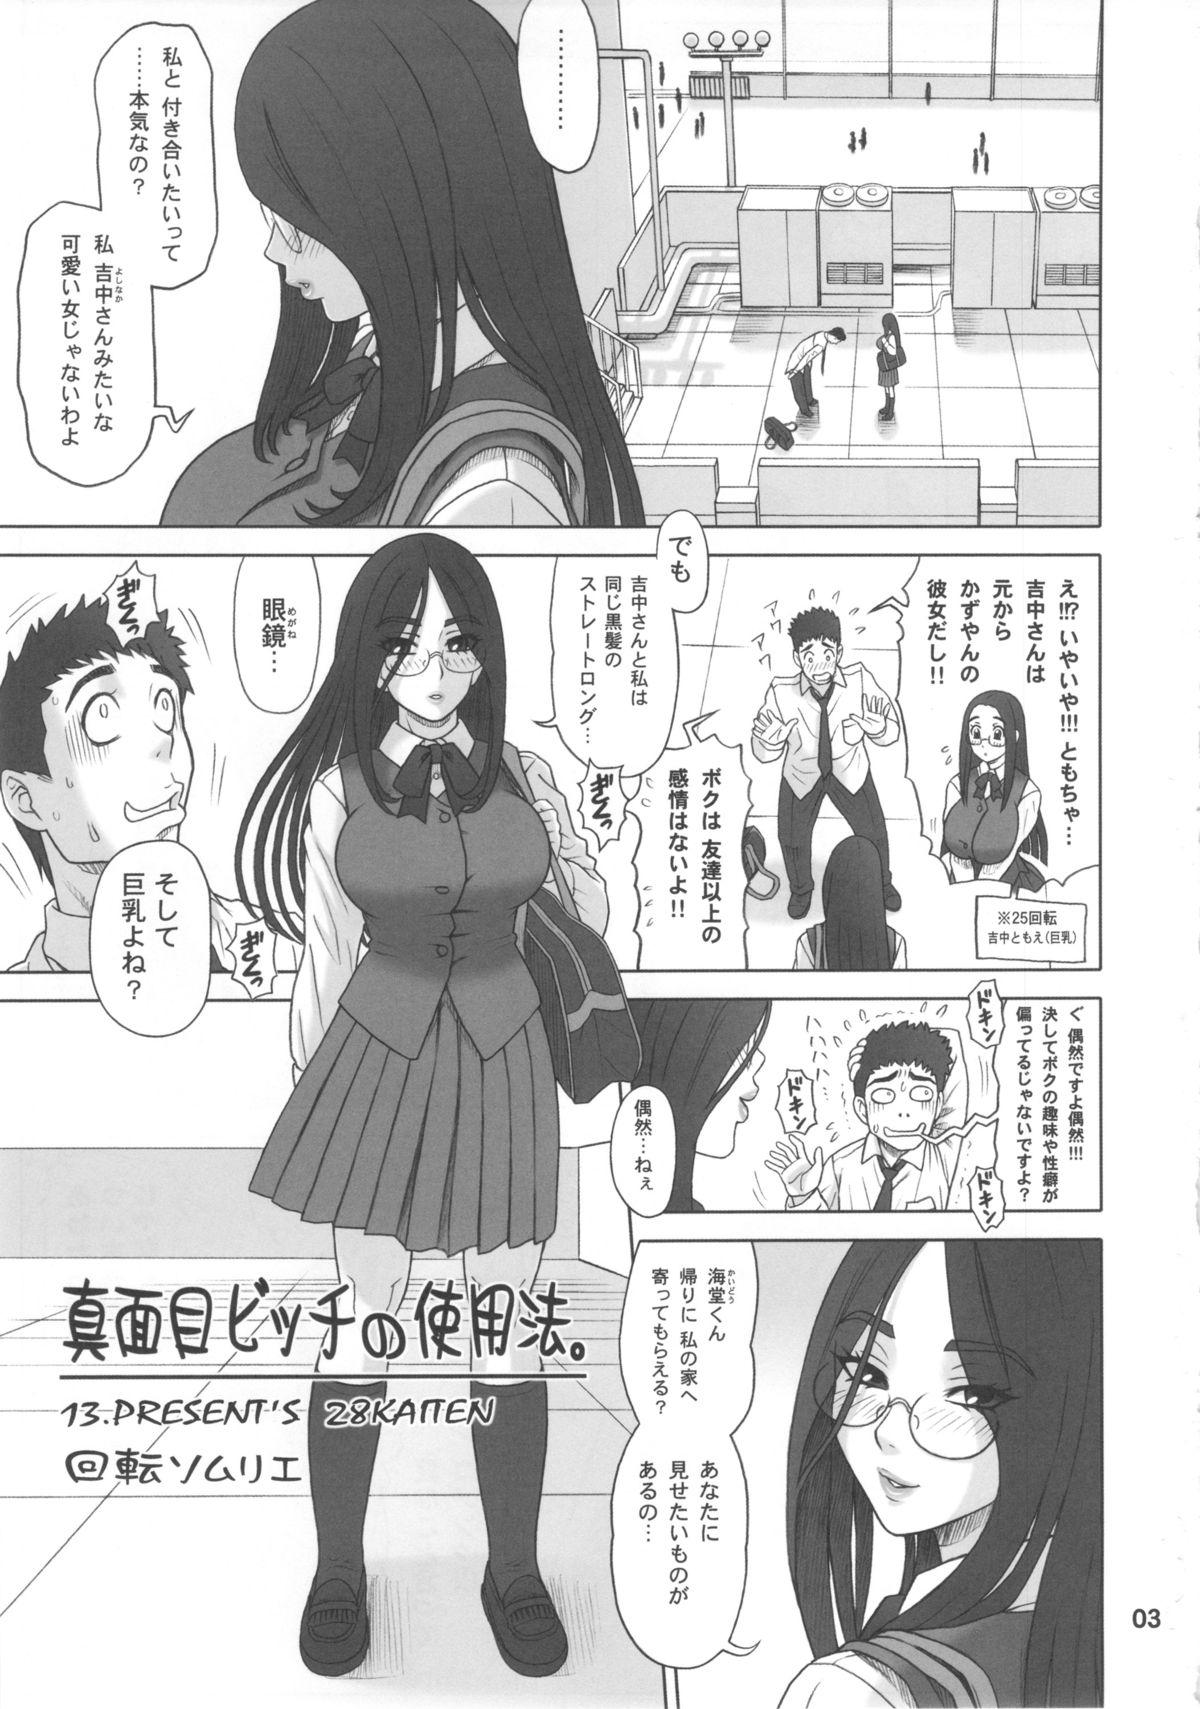 Threeway 28 Kaiten - Majime Bitch no Shiyou Hou. With - Page 2